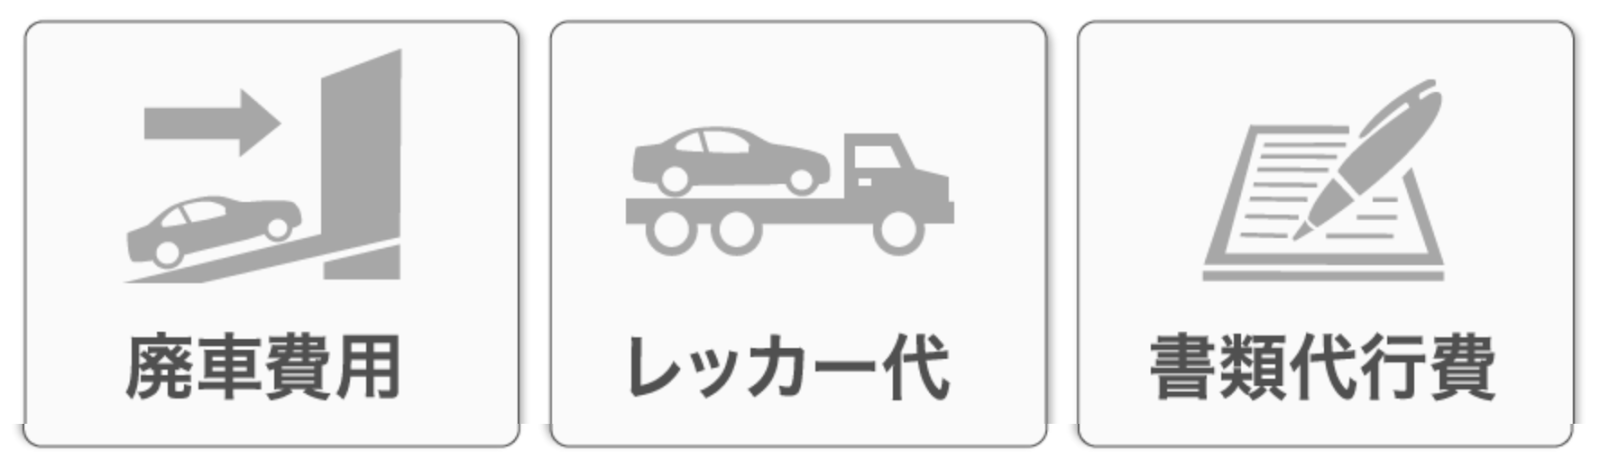 日本 情報 在日本報廢車要怎麼處理 廃車手続き 蝦米子 生活筆記本